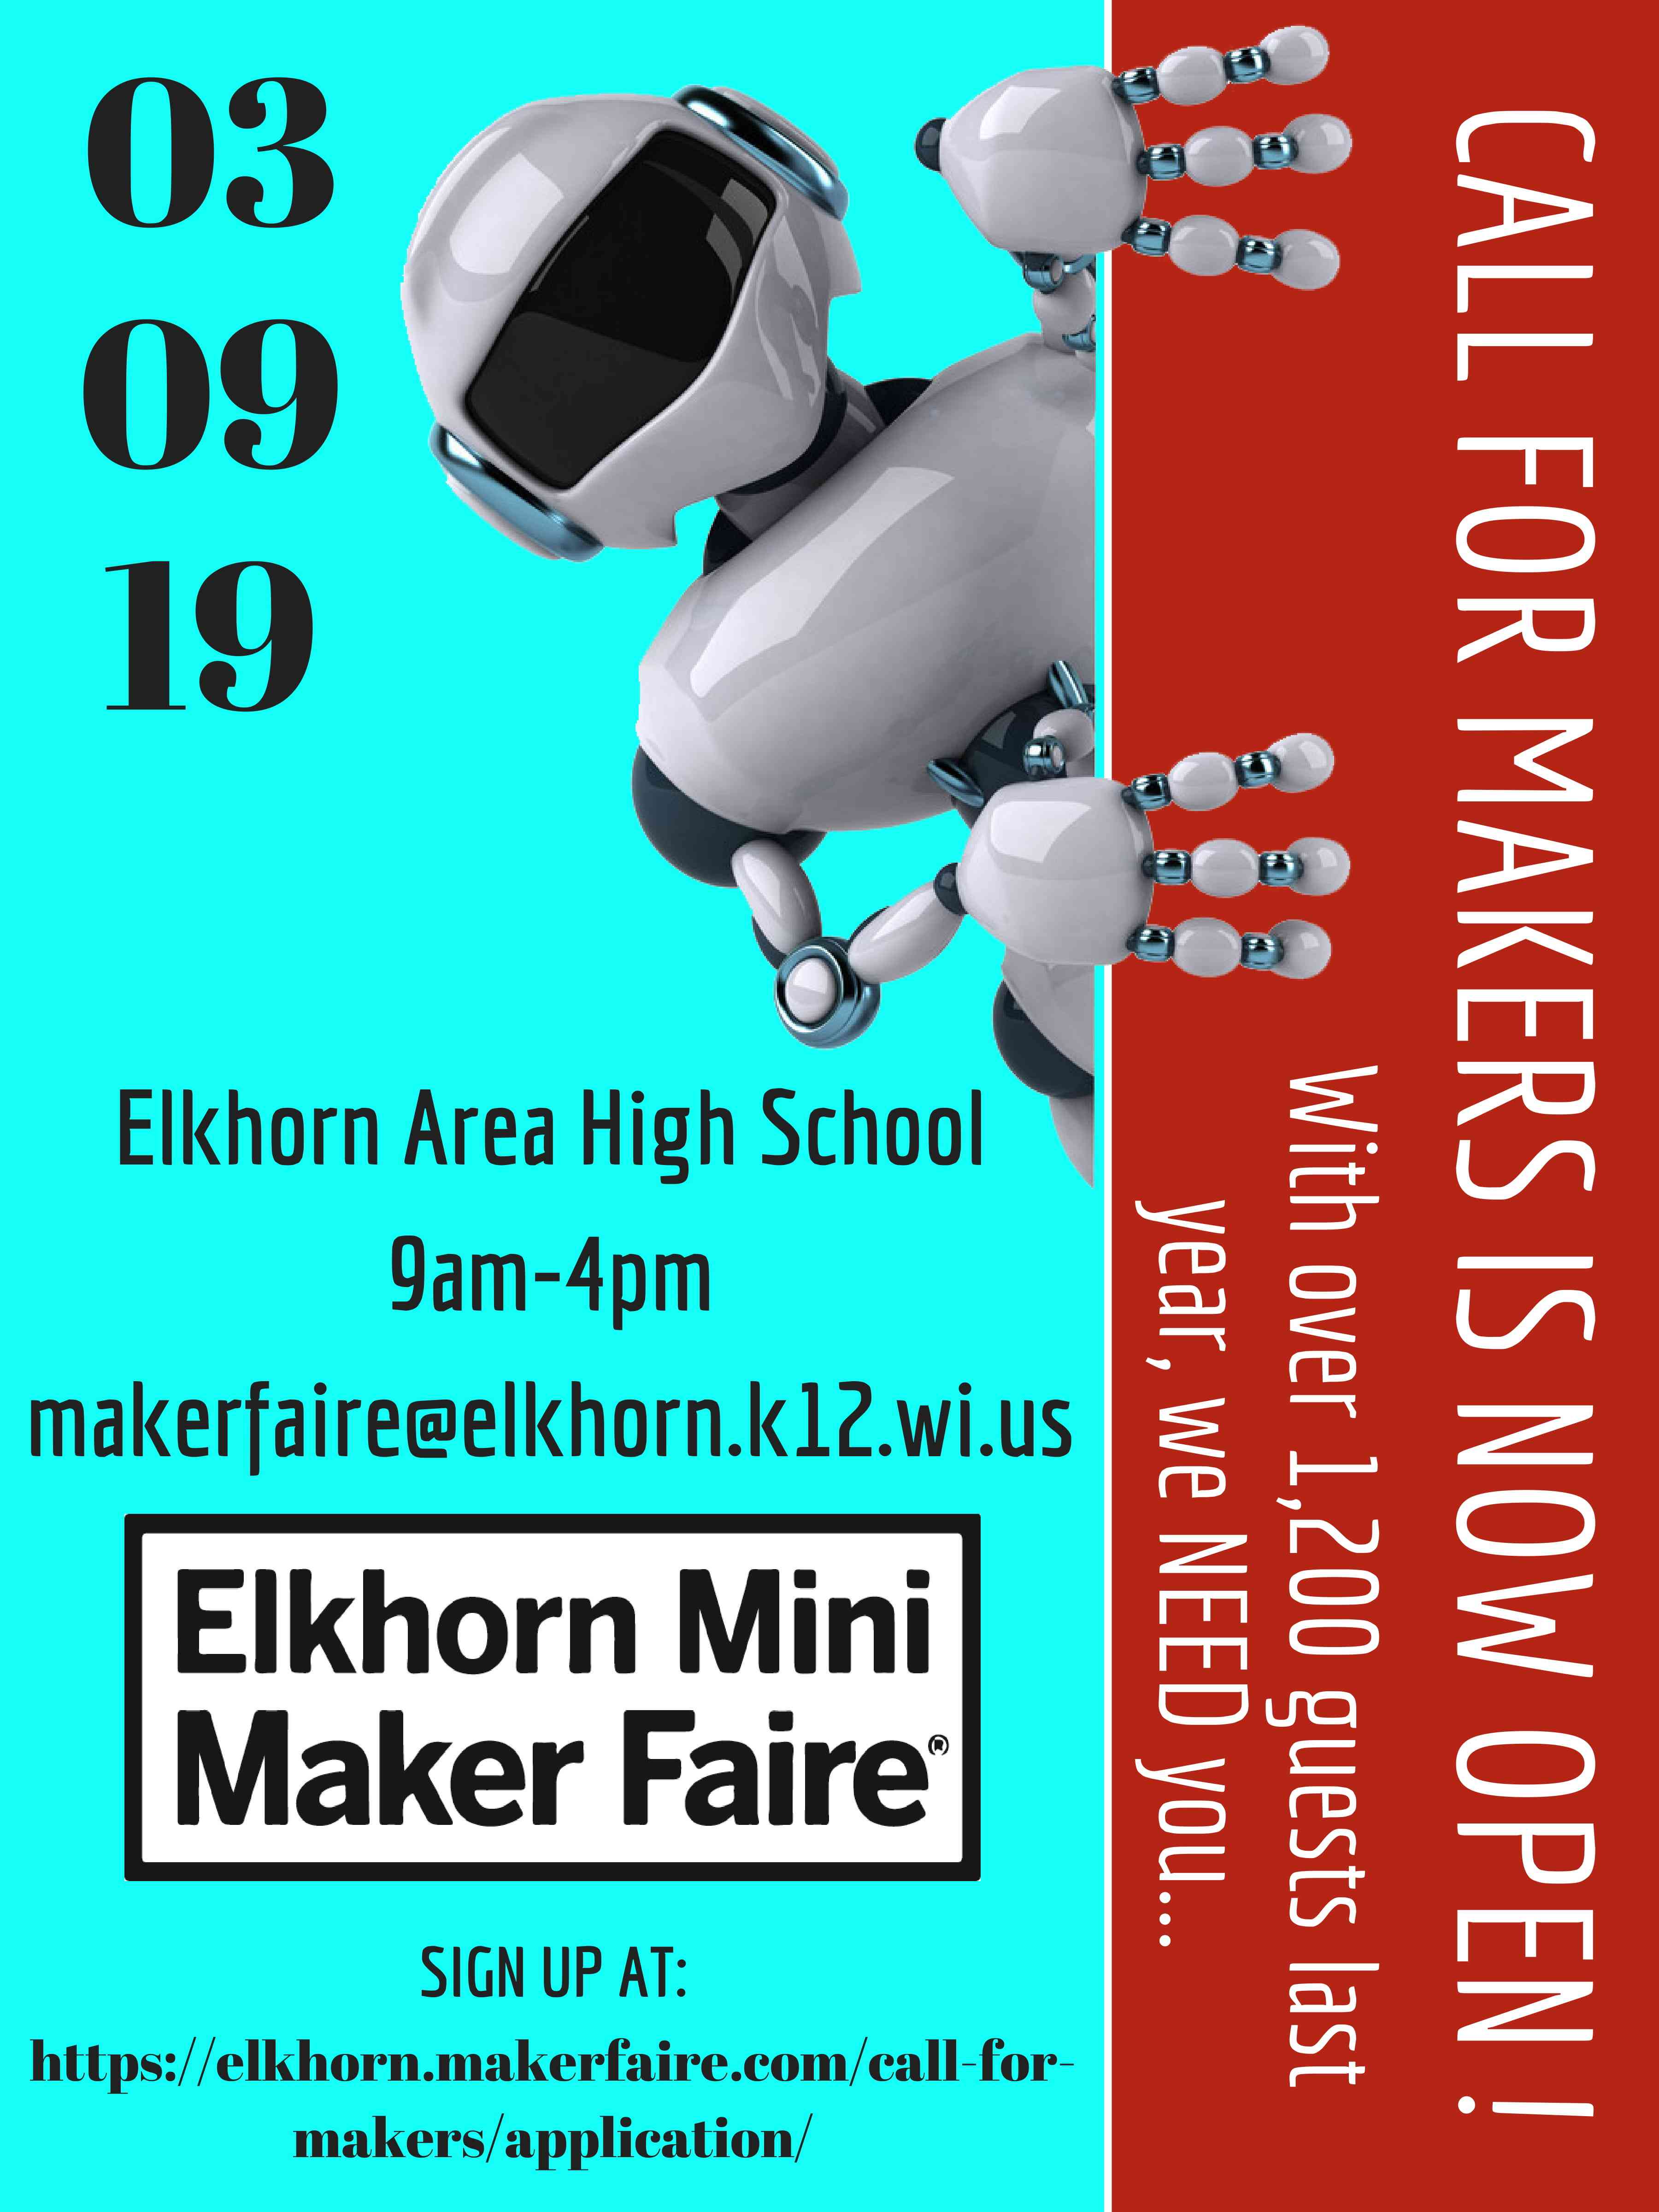 Elkhorn Mini-Maker Faire 2019, Maker Fees Image